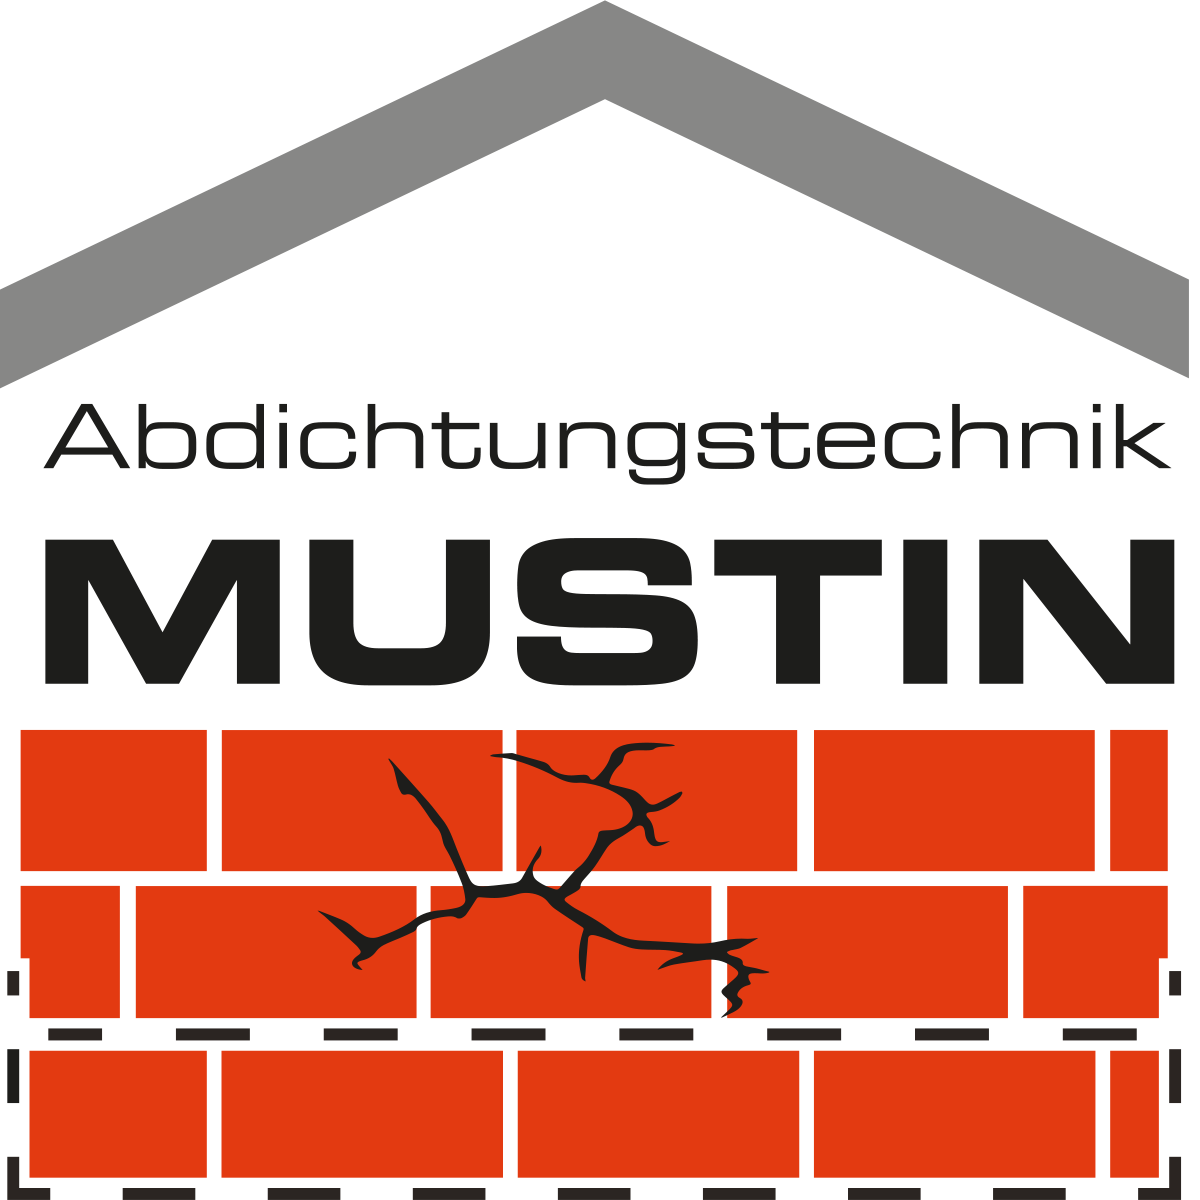 Abdichtungstechnik Mustin | Der Spezialist für Bauwerksabdichtungen